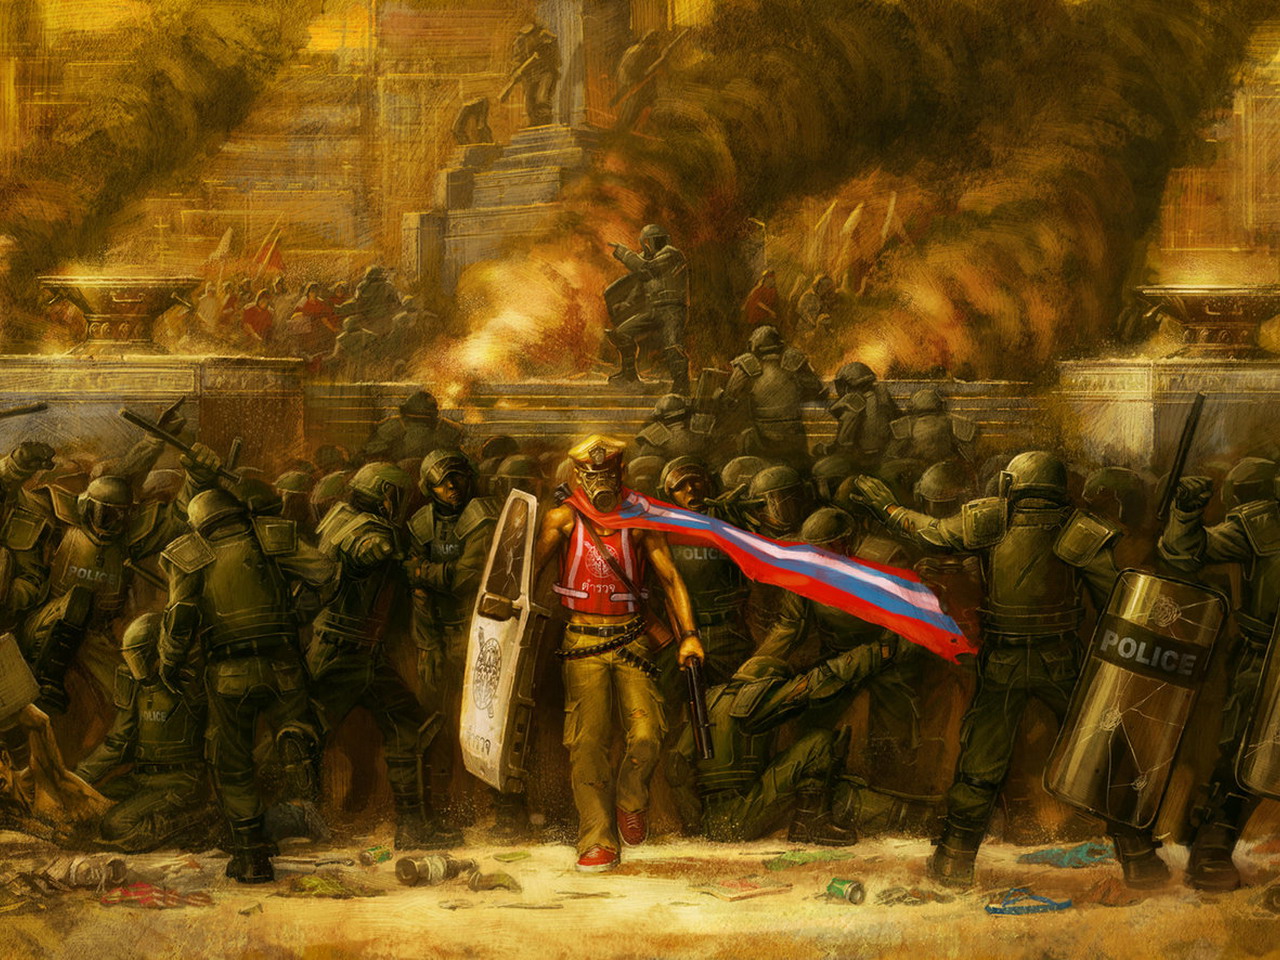 Фото В городе мятеж, бунт и пожары, сквозь шеренгу полицейских с дубинками и щитами, идет мужчина с ярким флагом и в противогазе, художник ameeeeba